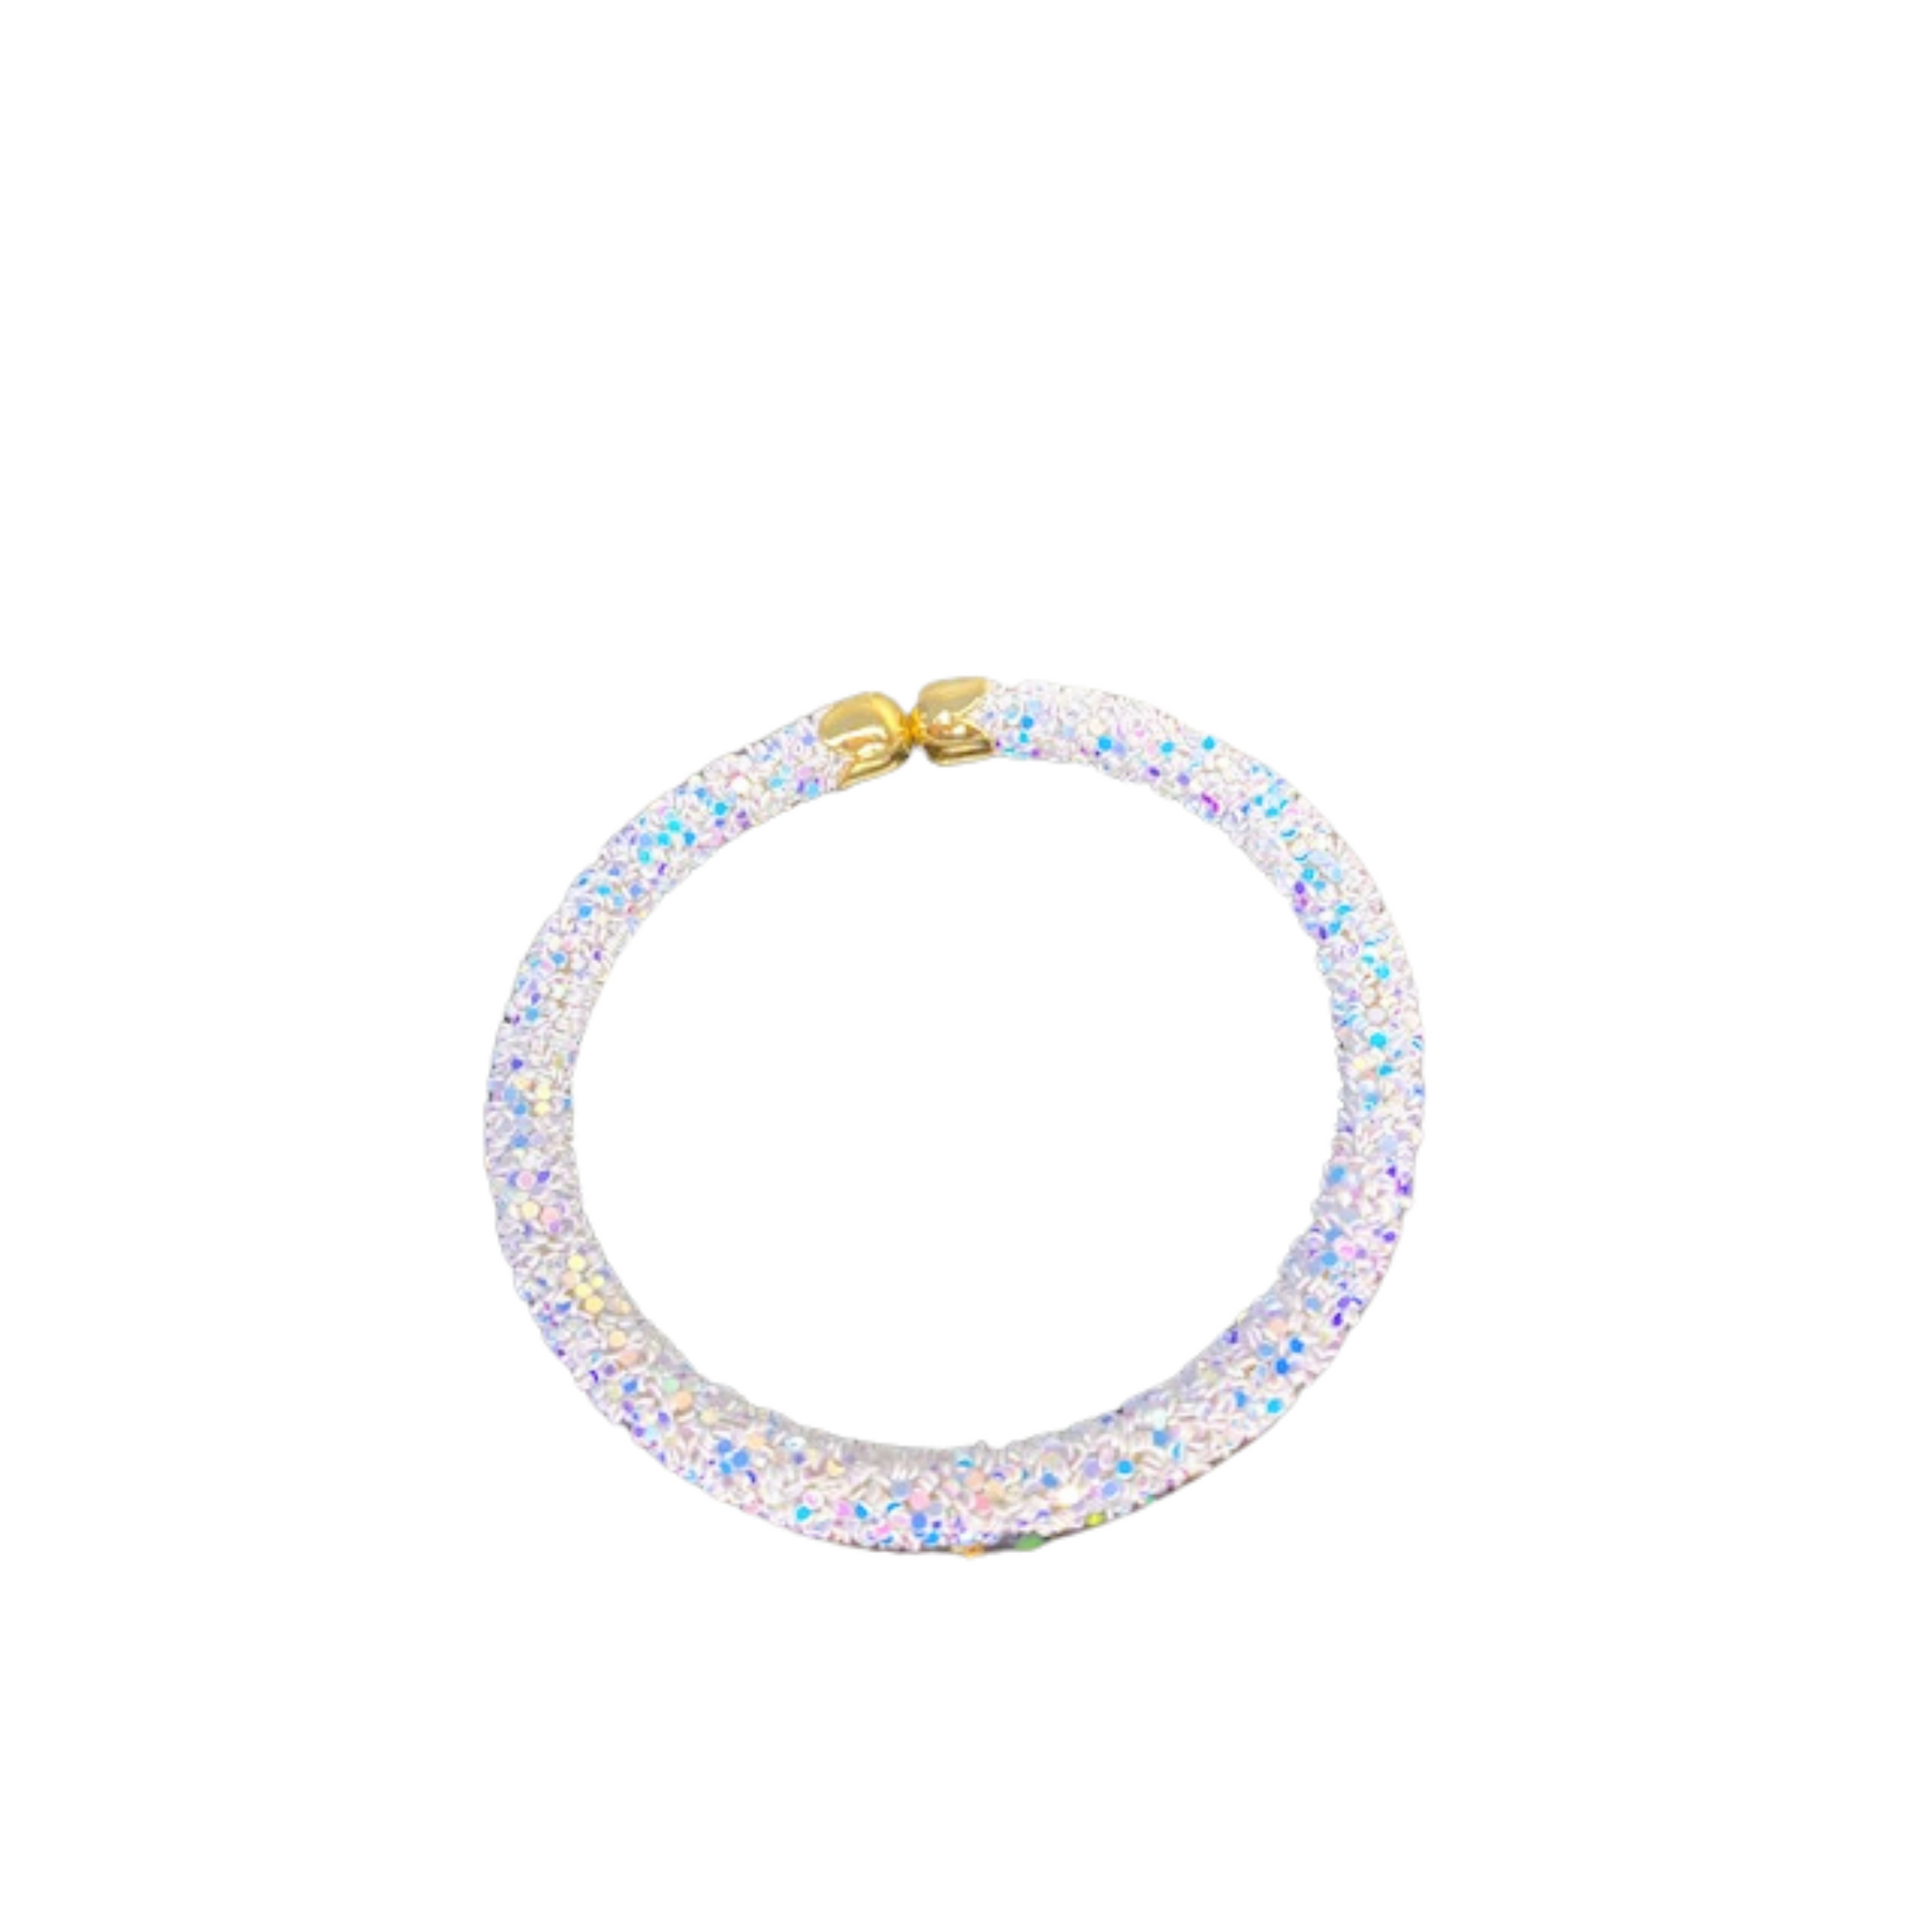 White Glitter Adjustable Bracelet, White Glitter Bracelet, Bracelet, Accessories, Taylor Shaye